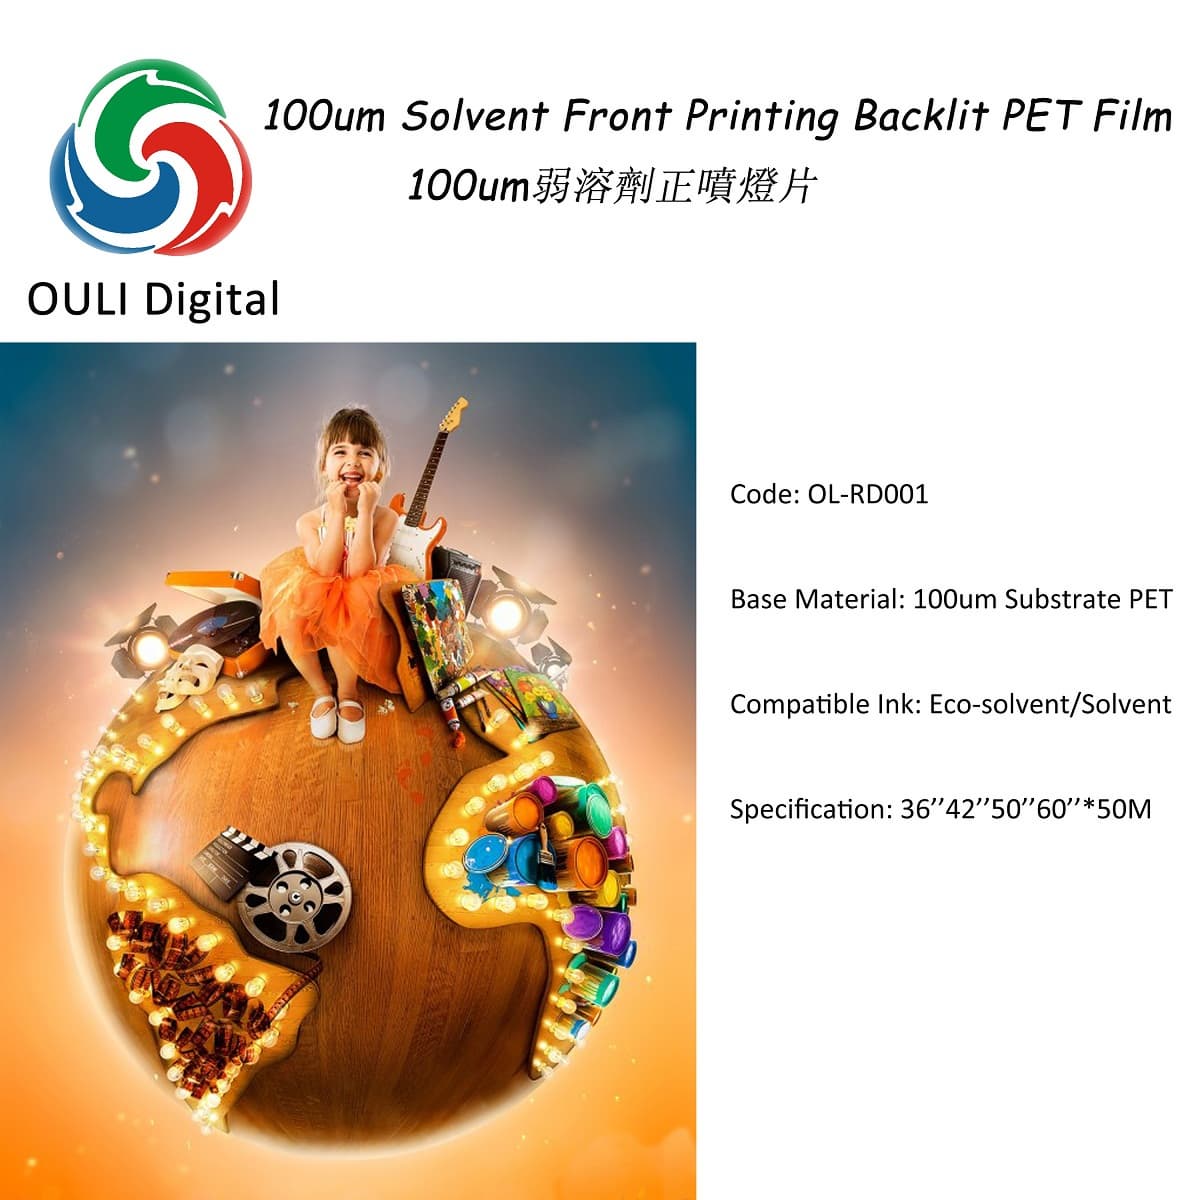 100um solvent front printing backlit PET Film